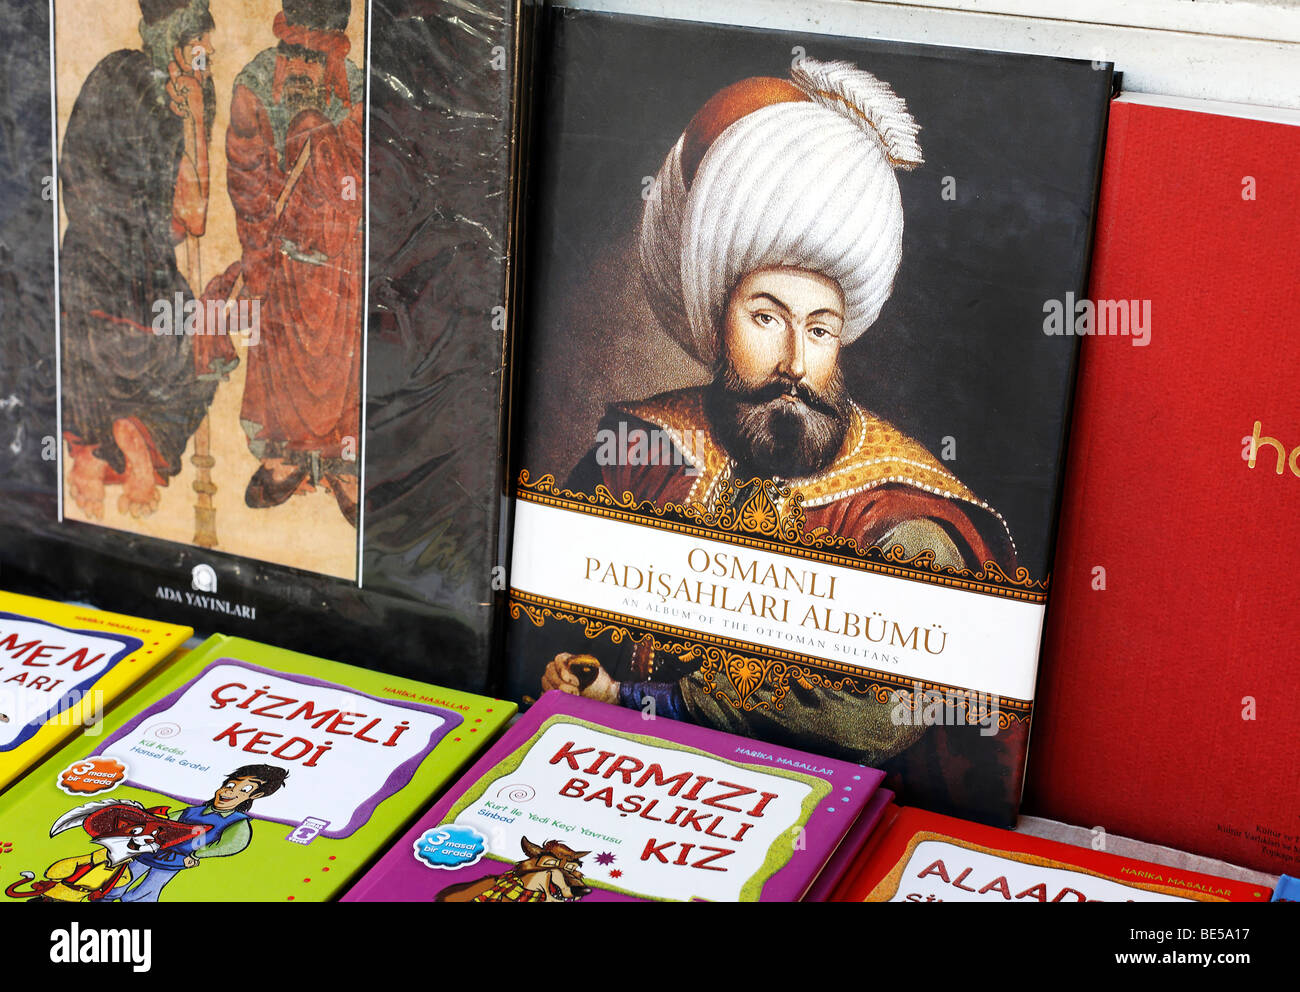 Prenota il titolo di un sultano ottomano, prenota bazaar, Beyazit Square, Istanbul, Turchia Foto Stock